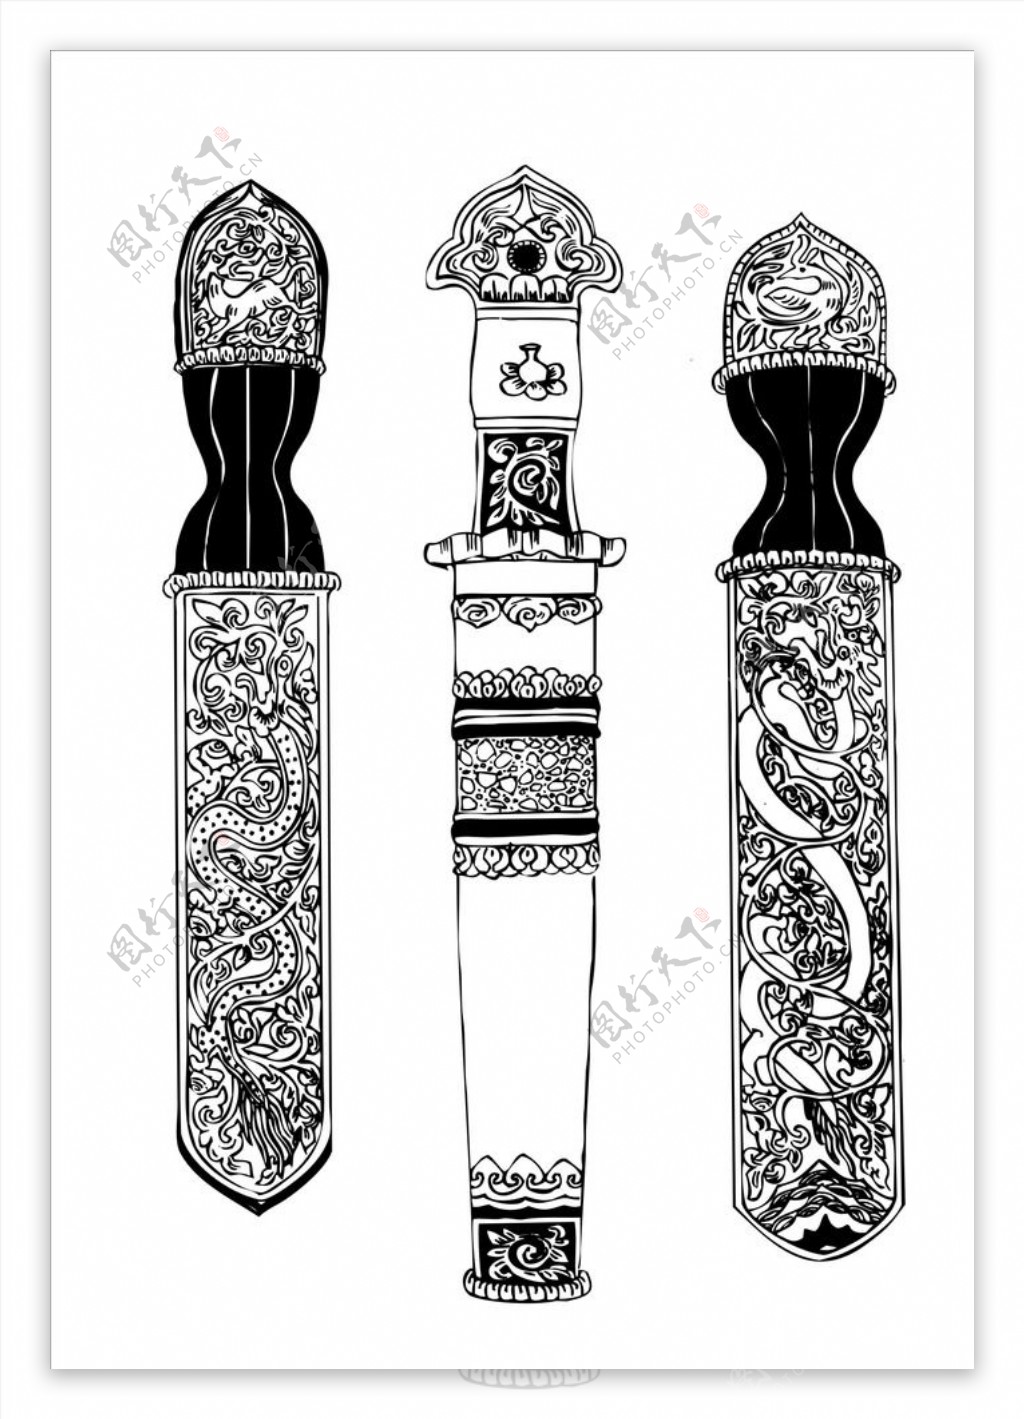 藏族刀具图案